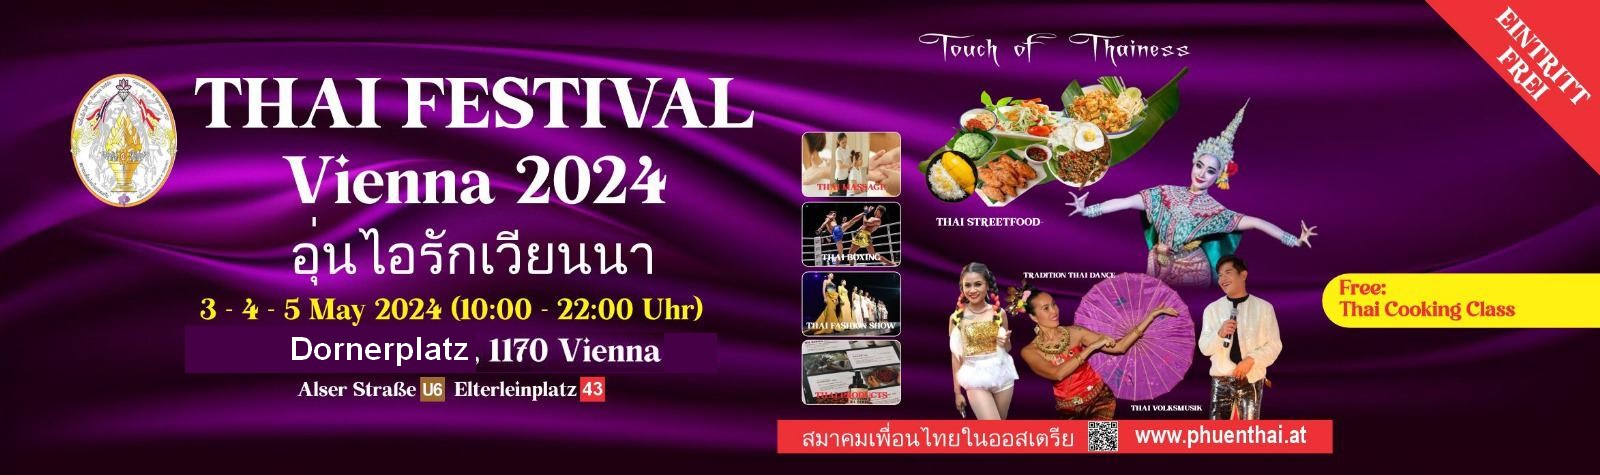 Thai Fest 2022 - Fotos - phuenthai.at